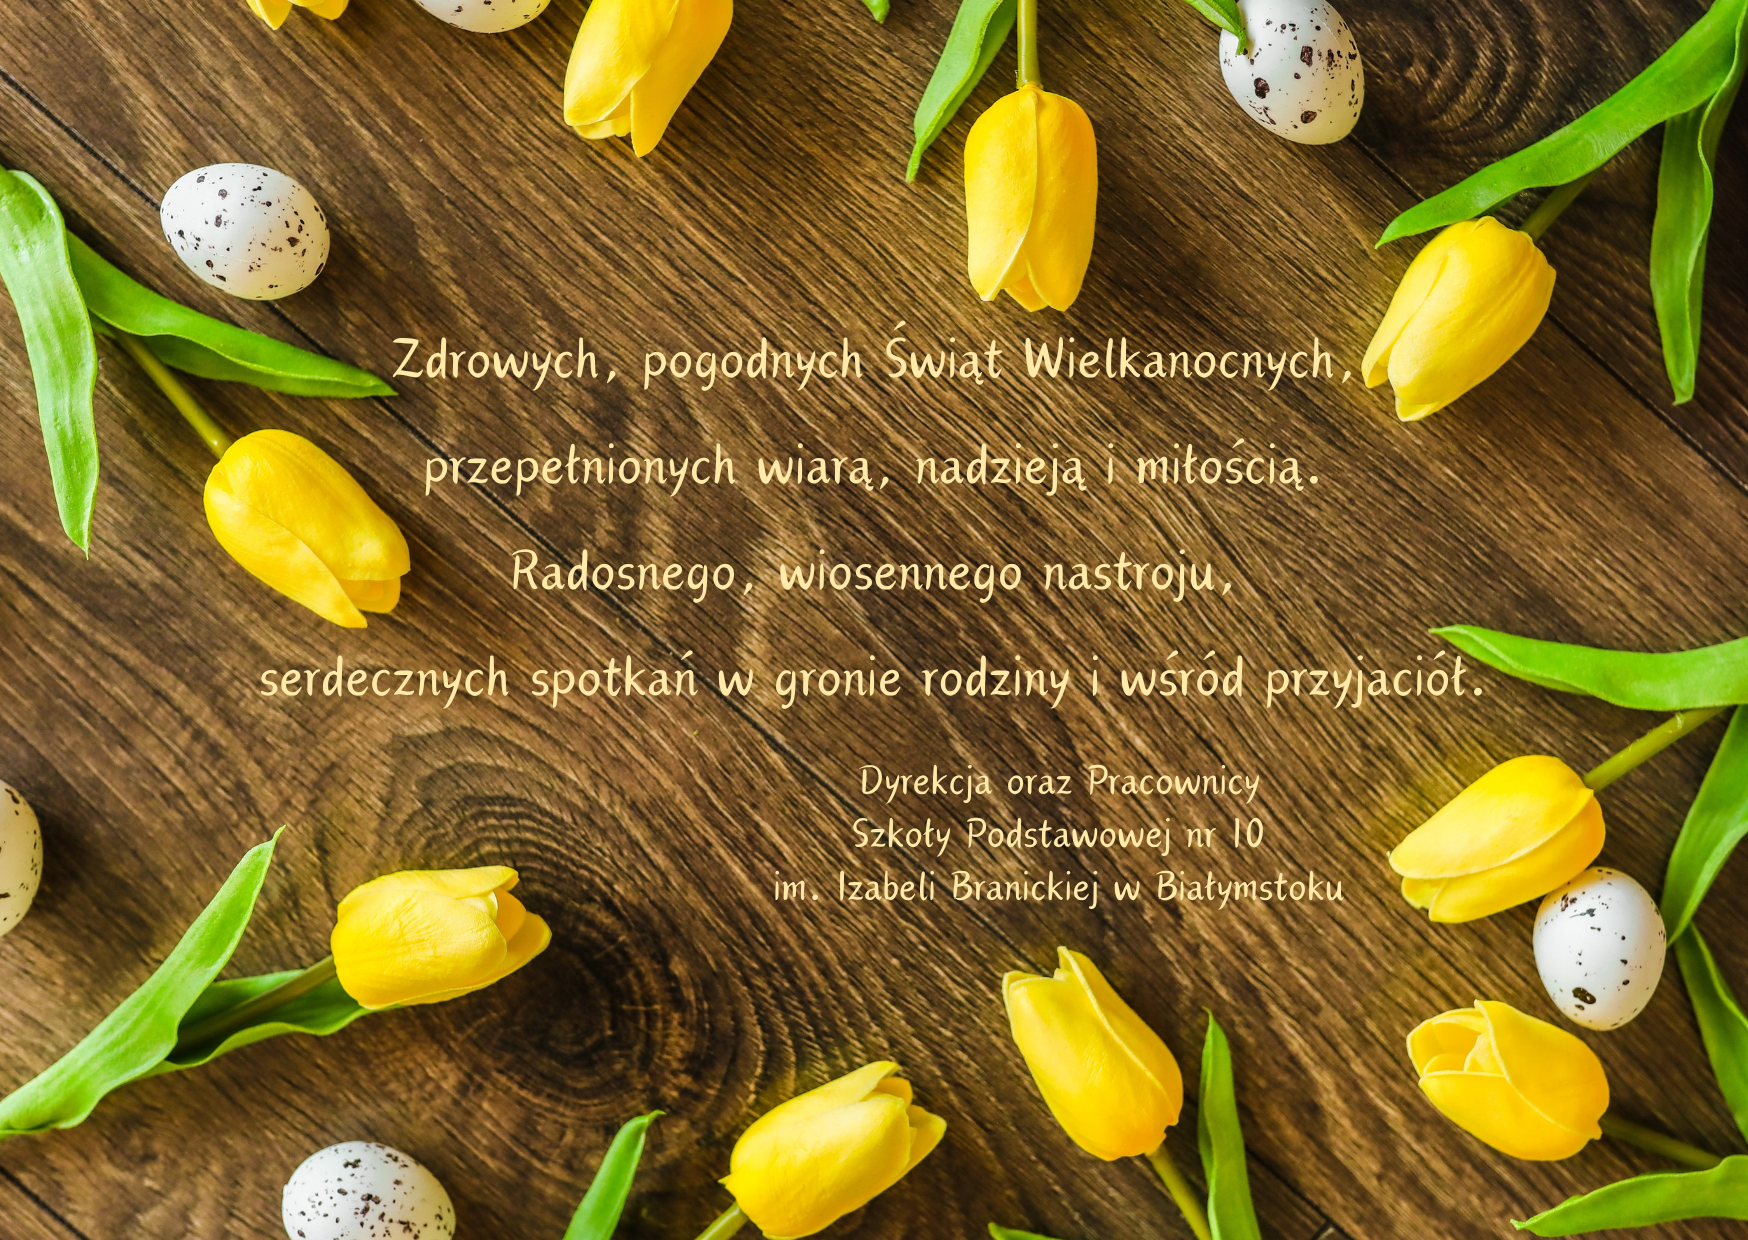 Życzenia Wielkanocne na tle w postaci drewnianej deski, tulipanów i kolorowych jajek.